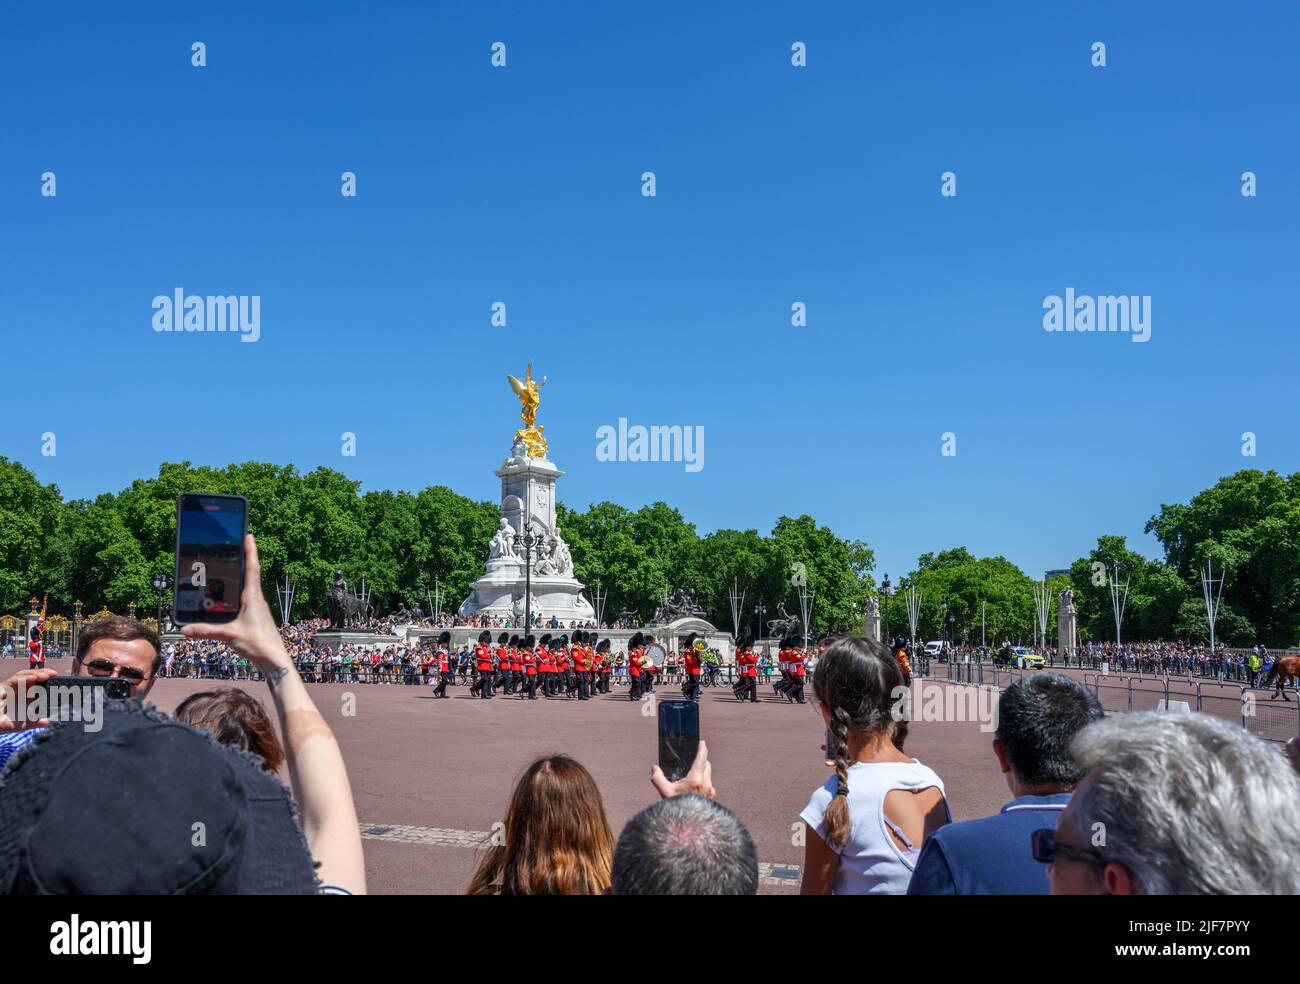 Massen von Touristen, die die Wachablösung am Buckingham Palace, London, England, Großbritannien, sehen Stockfoto